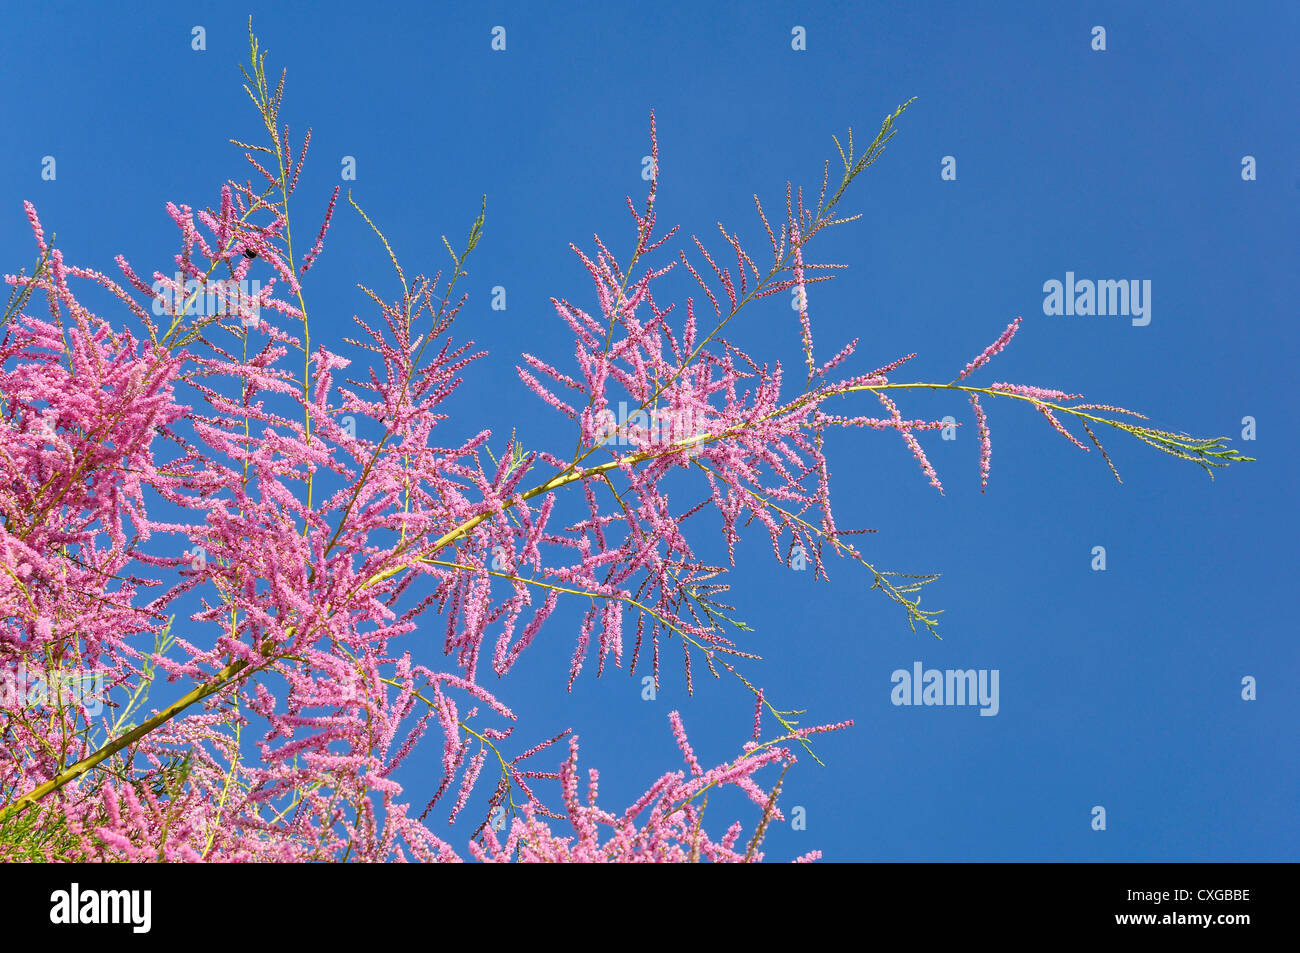 Blüte auf Ästen eines Baumes Tamariske auf blauen Himmelshintergrund Stockfoto